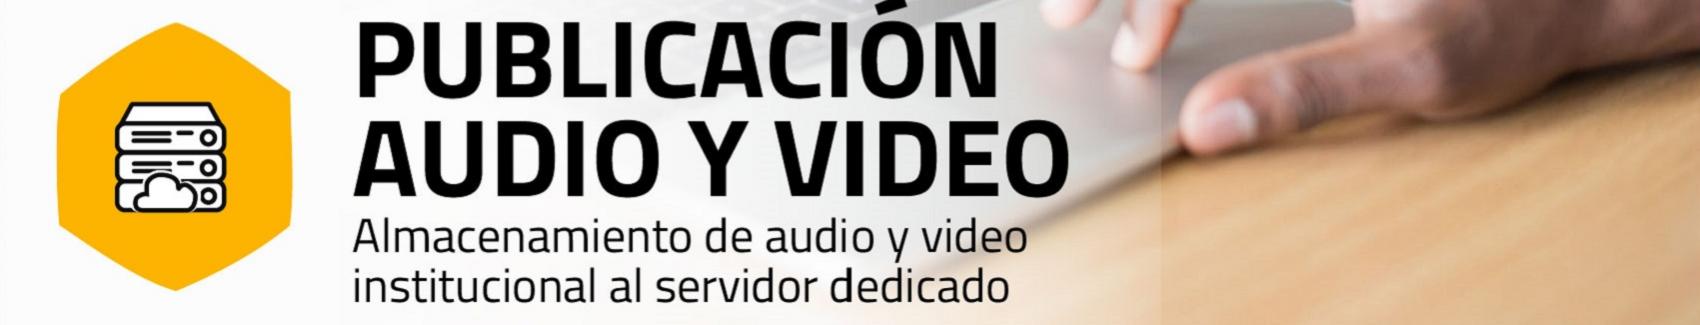 Imagen servicio Publicación audio y video